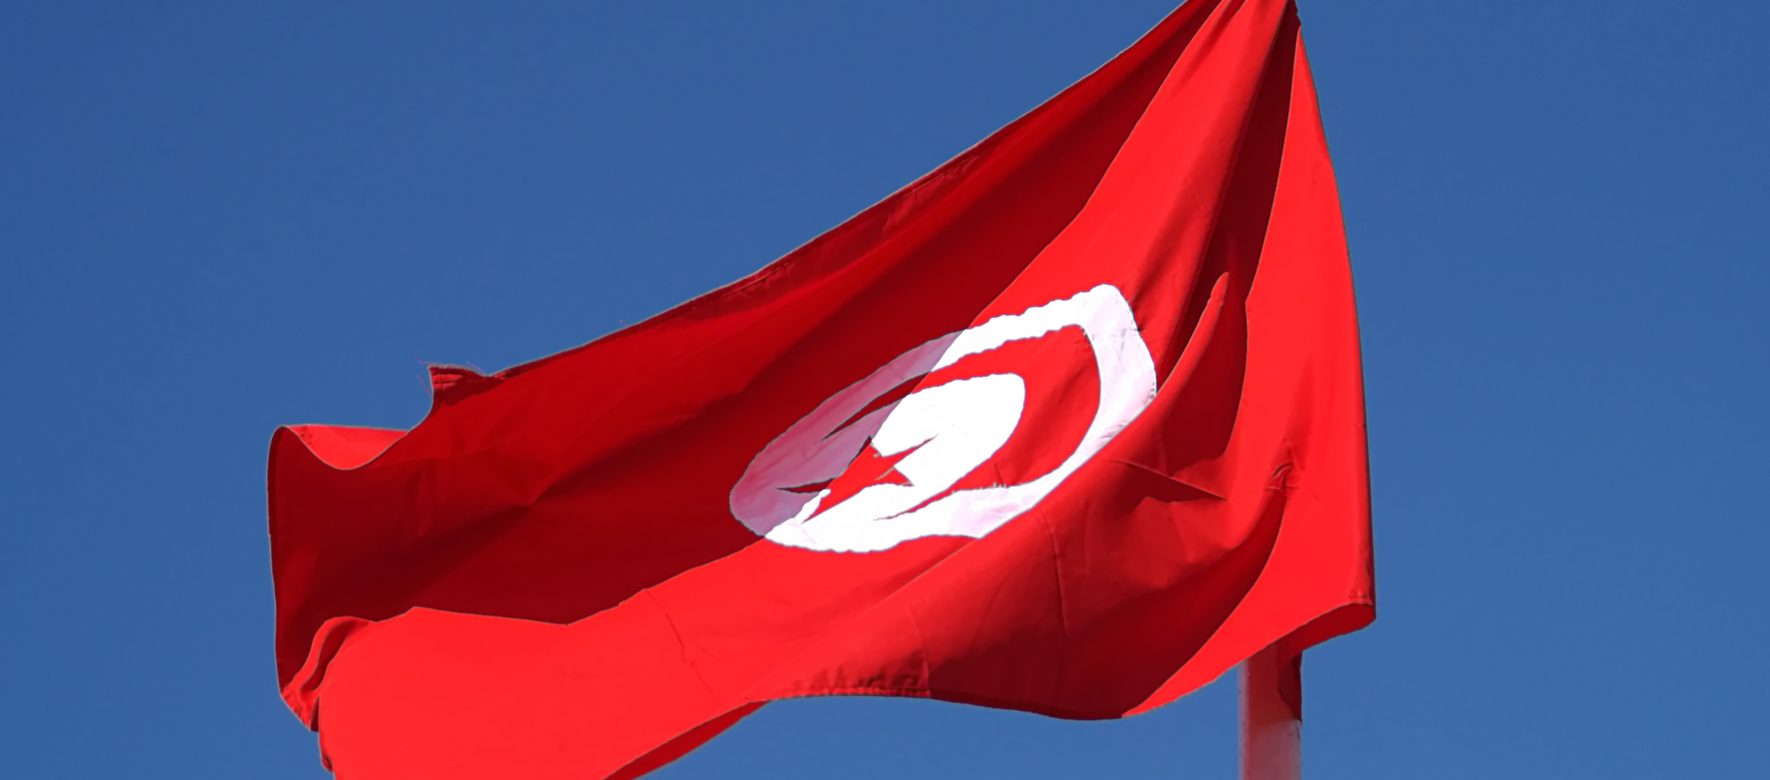 Ces startups tunisiennes qui montrent la voie